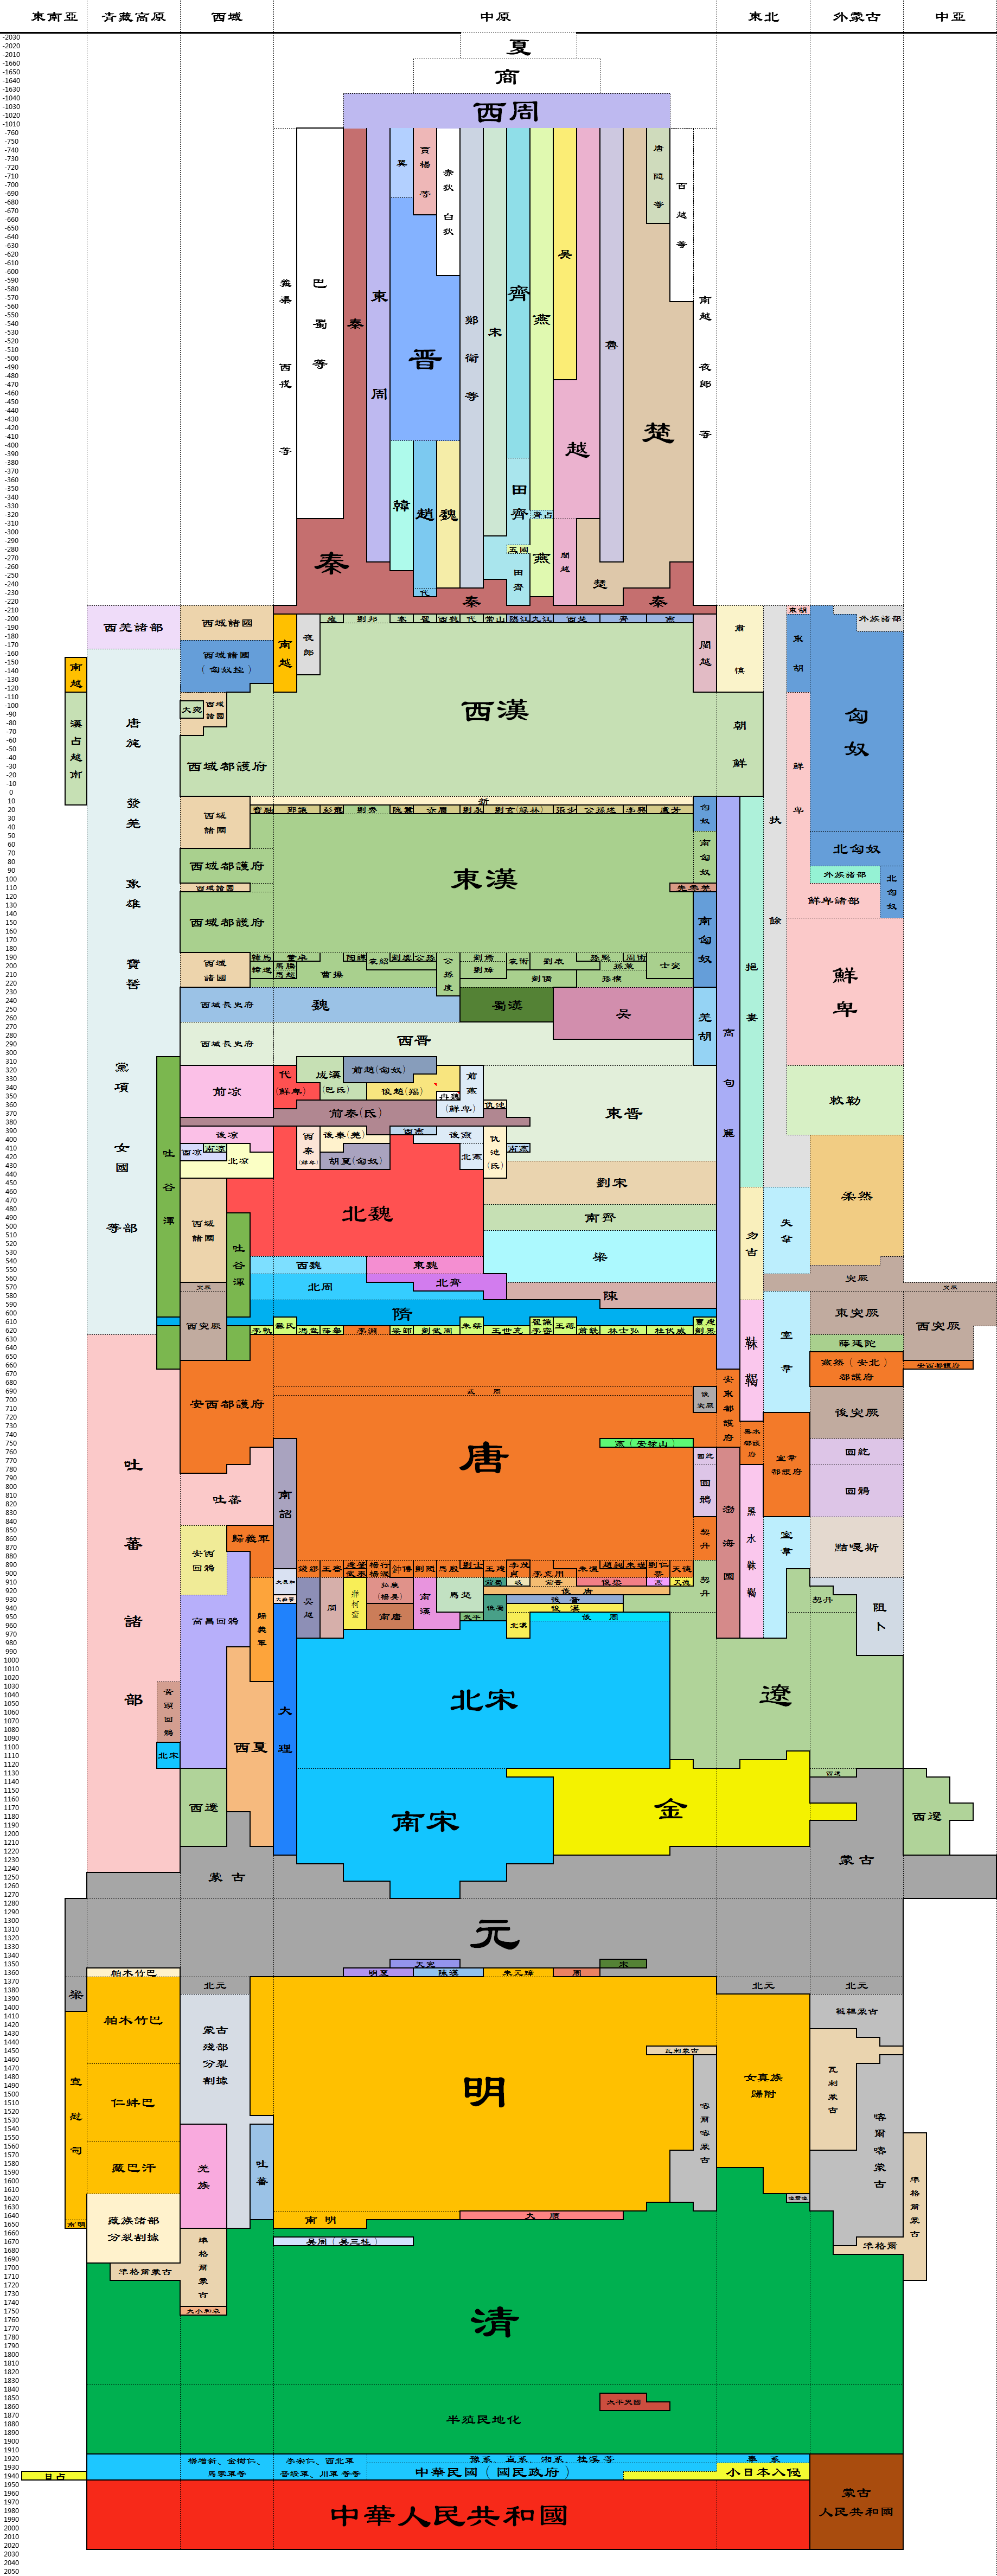 中国历史朝代跨度表高清图+Excel表格版下载